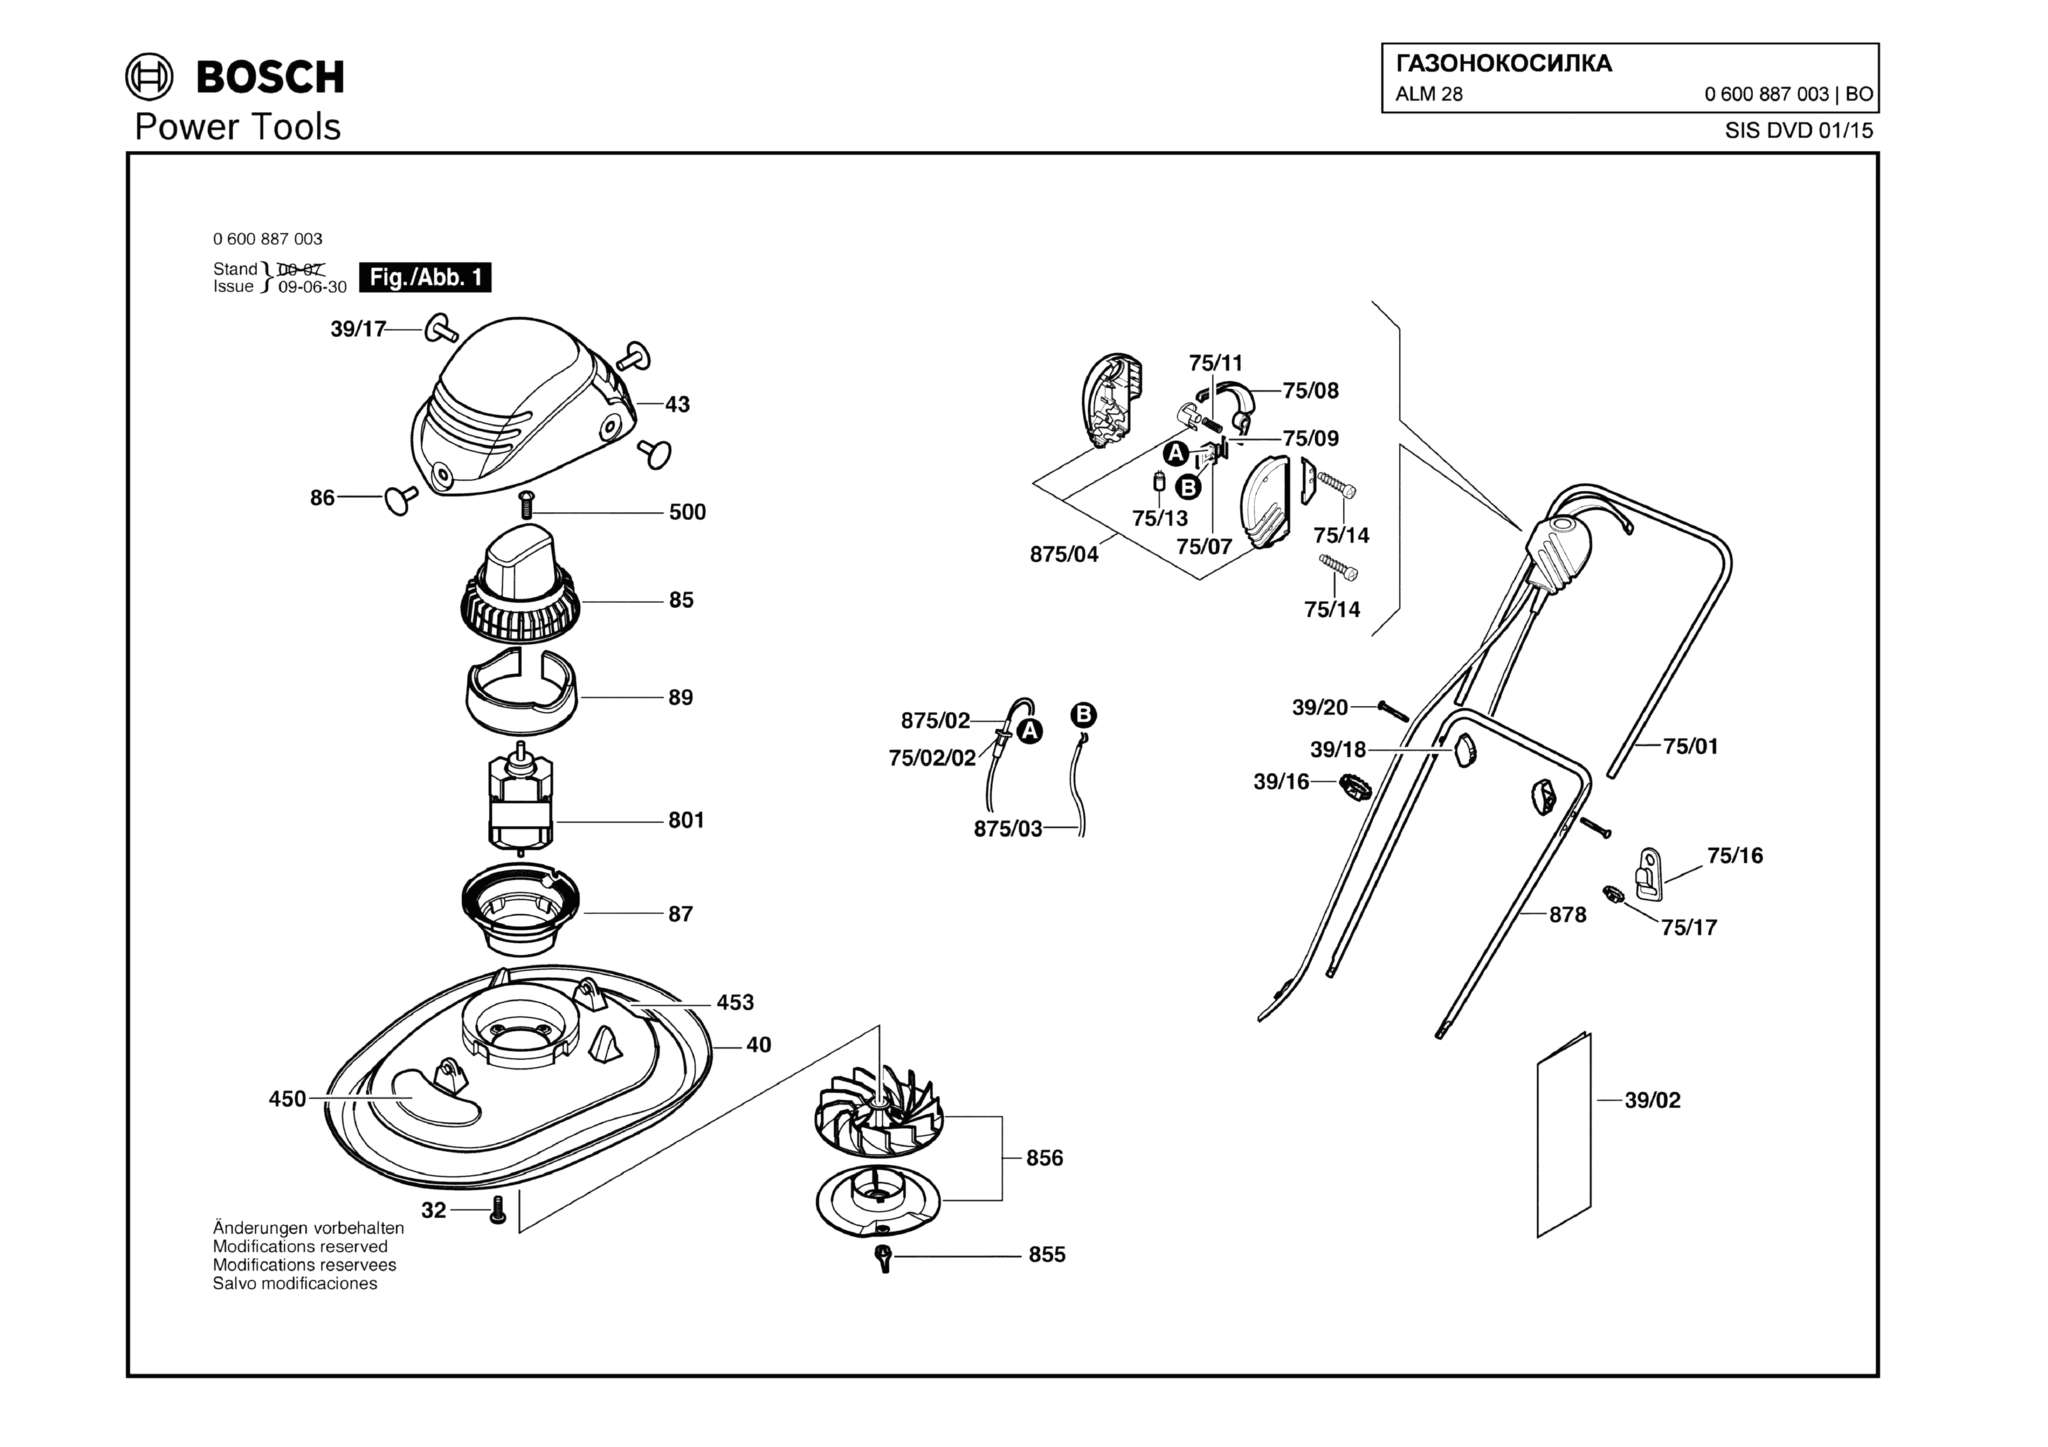 Запчасти, схема и деталировка Bosch ALM 28 (ТИП 0600887003)